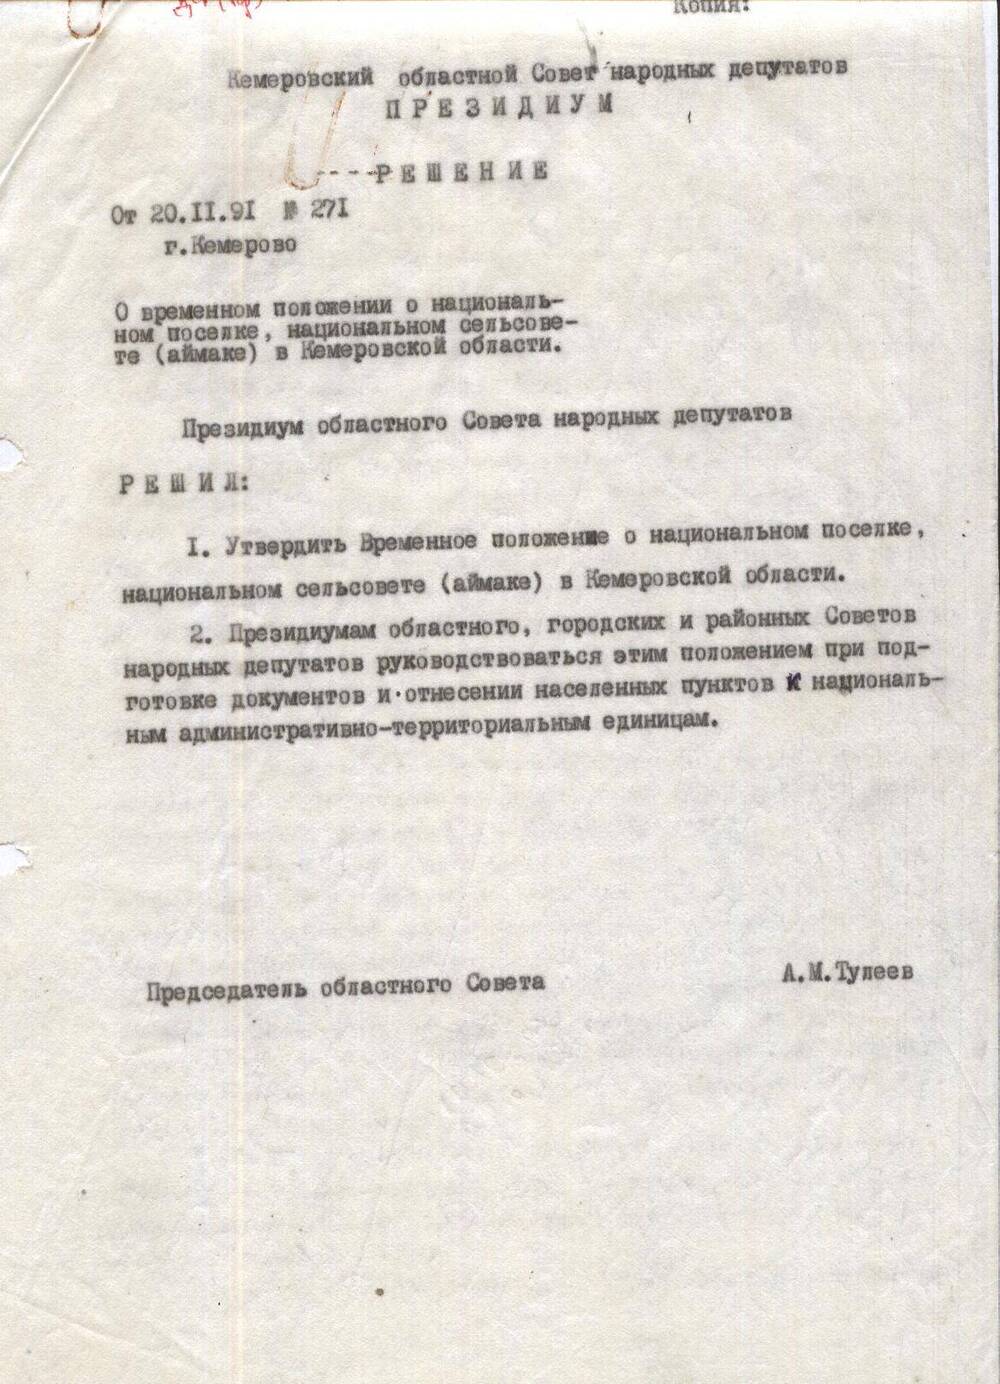 Копия решения о временном положении о национальном поселке (аймаке) в Кемеровской области от 20.11.1991г.